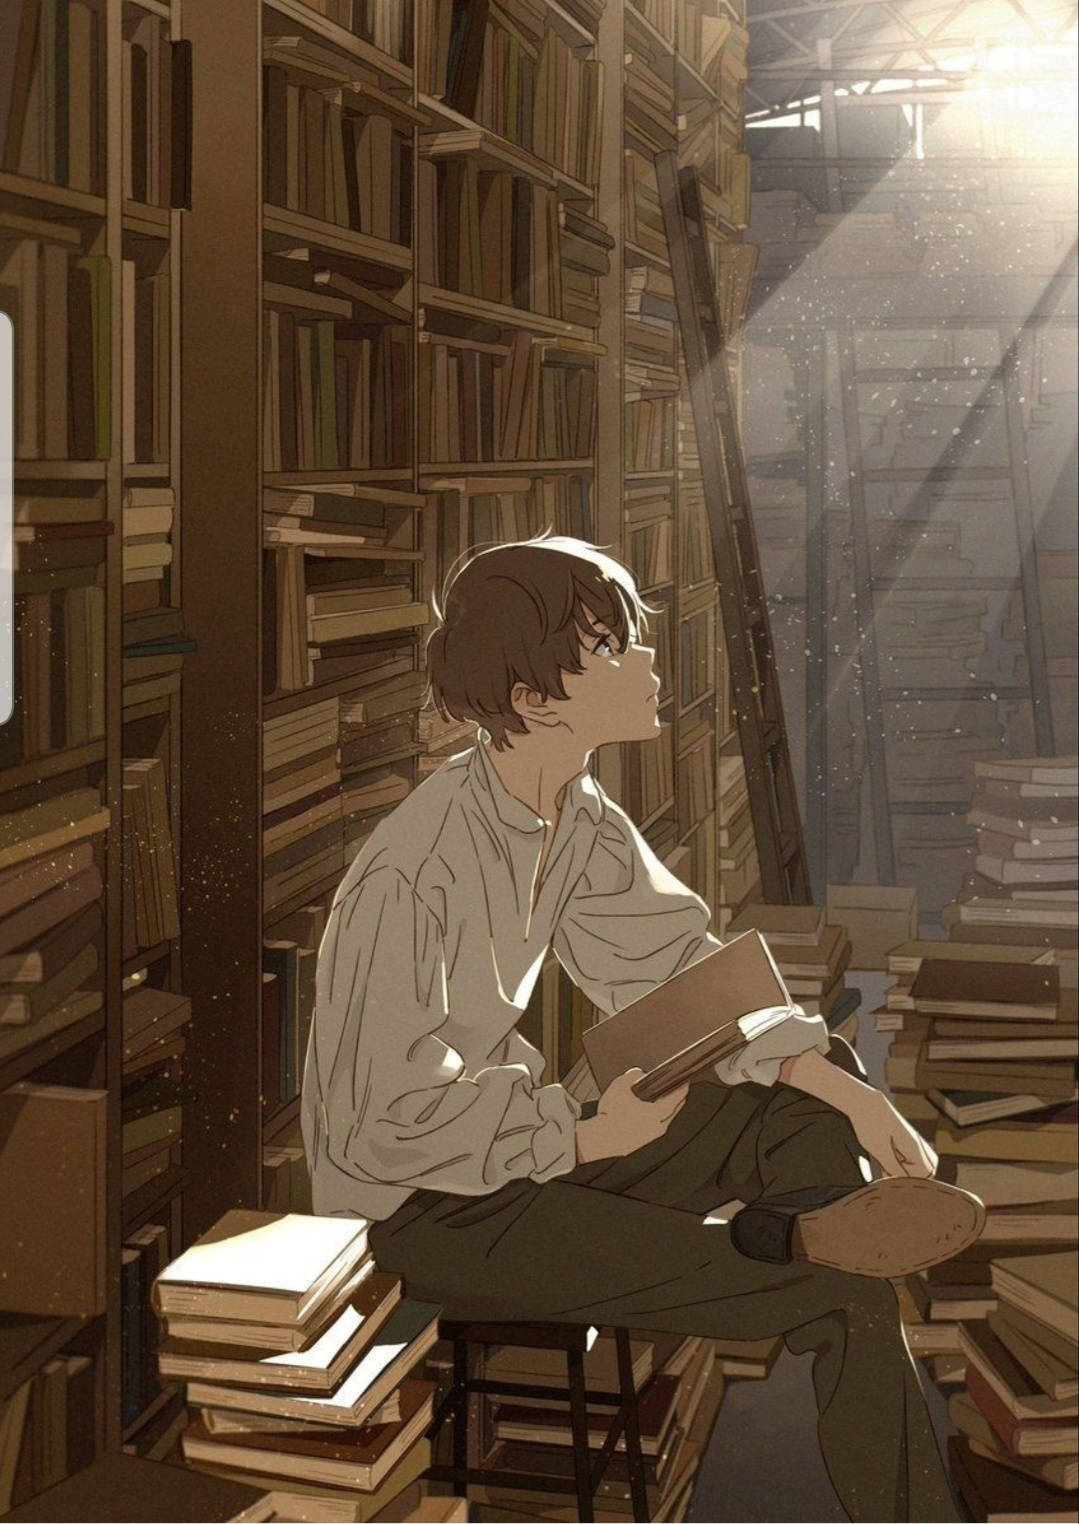 Aesthetic Anime Boy Books Library Wallpaper